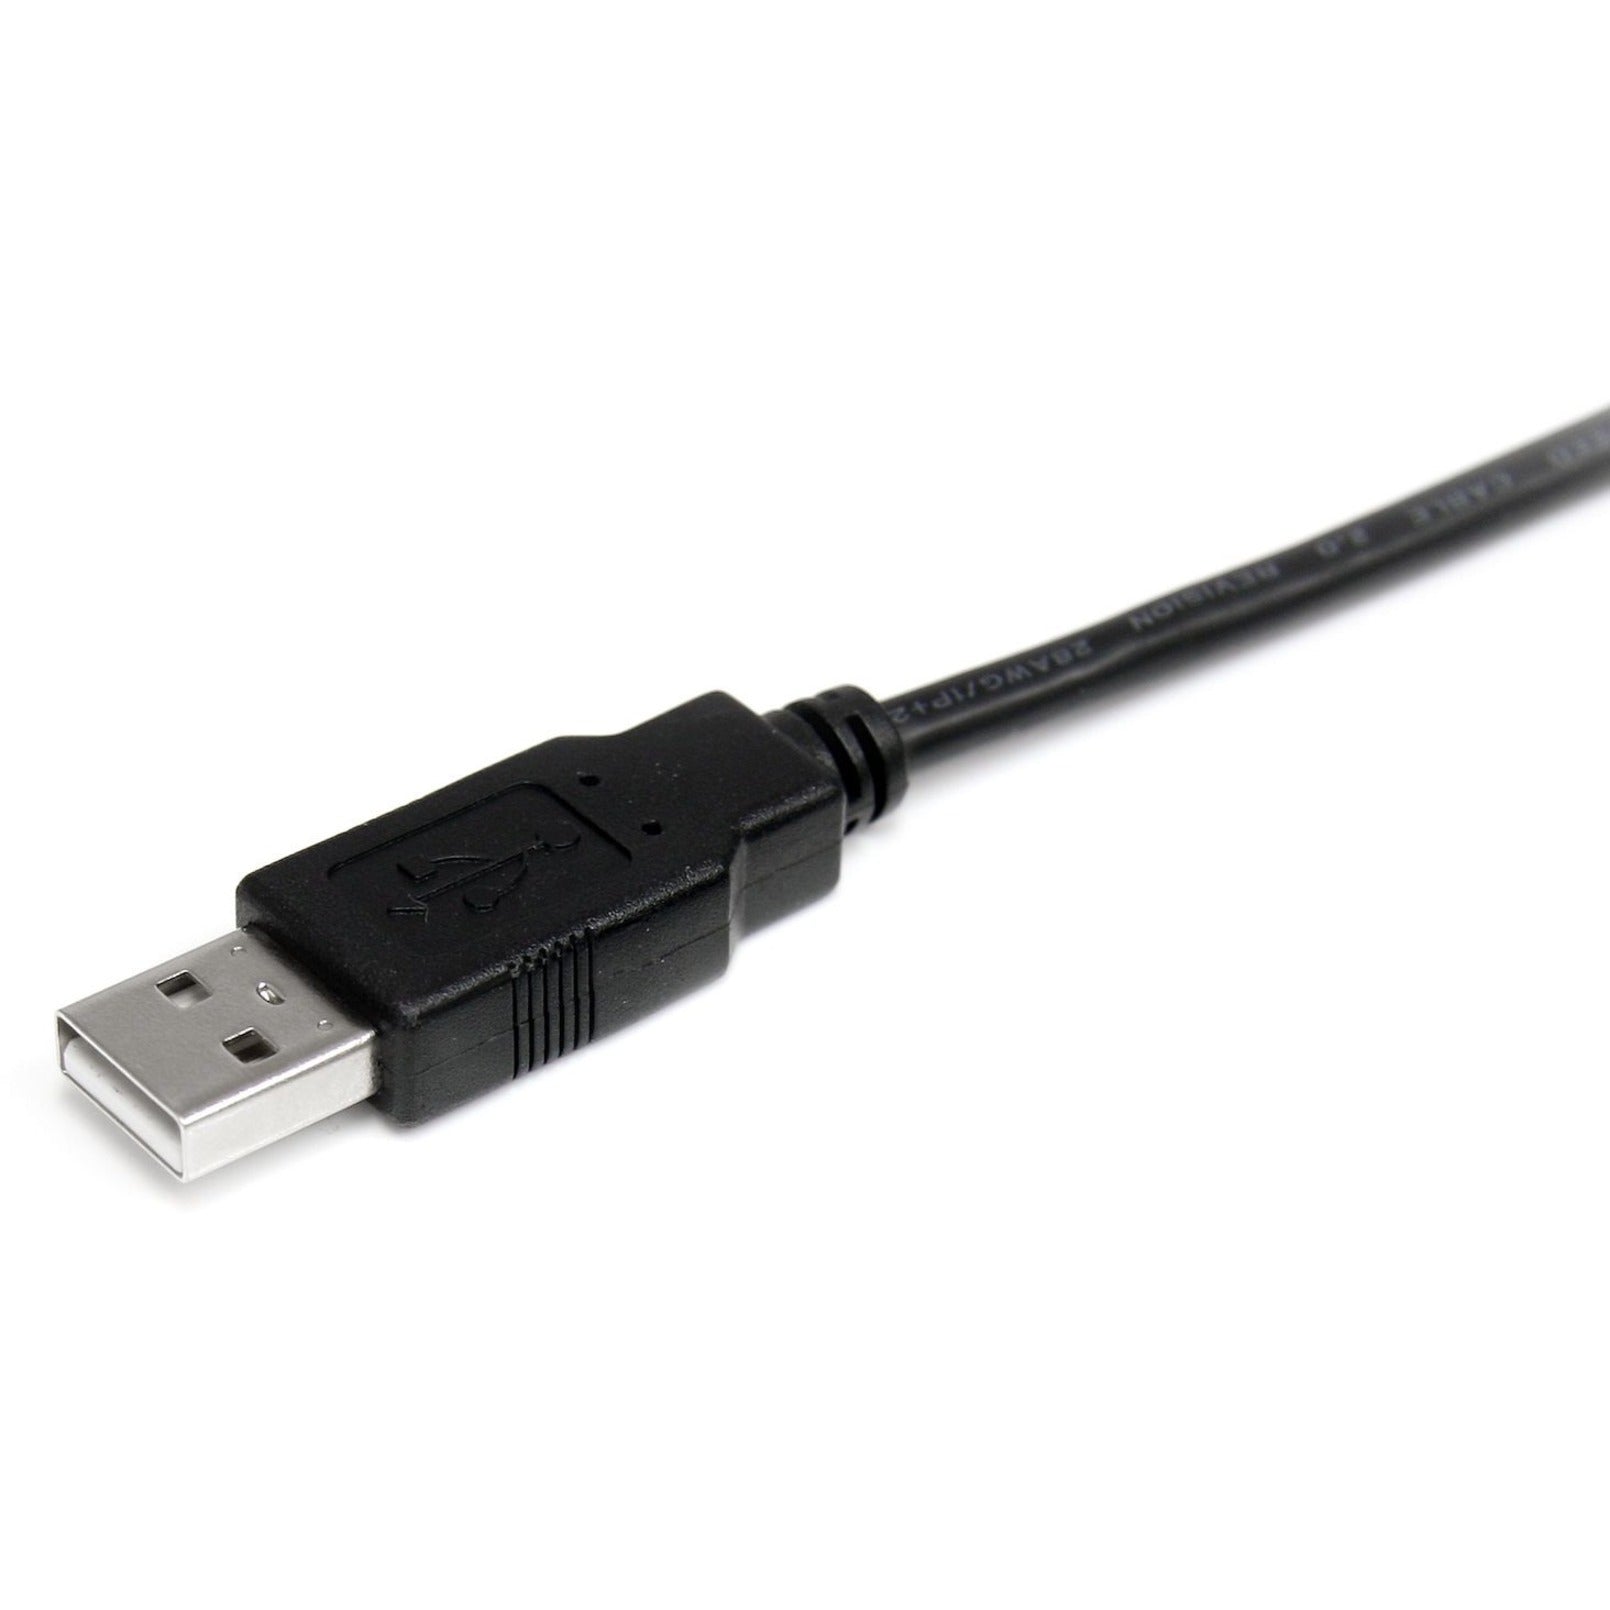 StarTech.com USB2AA2M 2m USB 2.0 A to A Cable - M/M, High-Speed Data Transfer, Lifetime Warranty